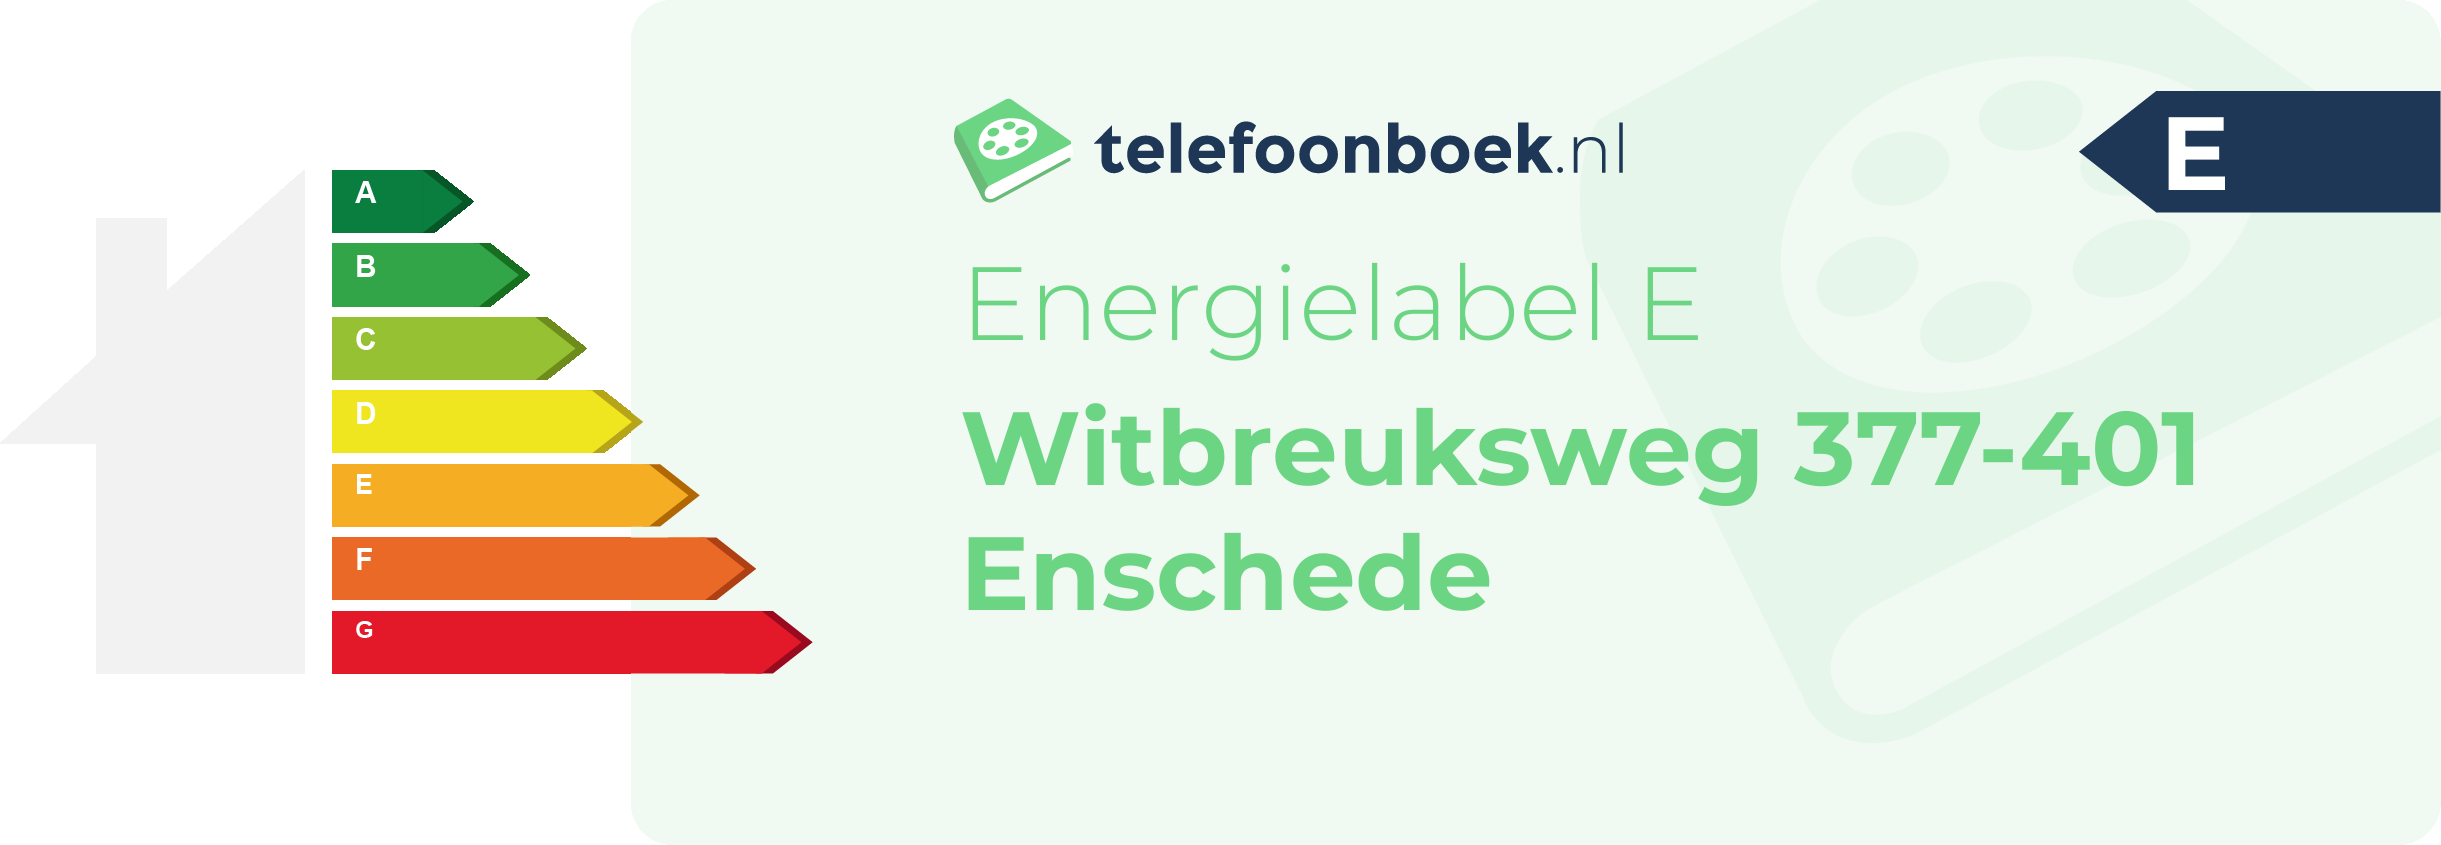 Energielabel Witbreuksweg 377-401 Enschede